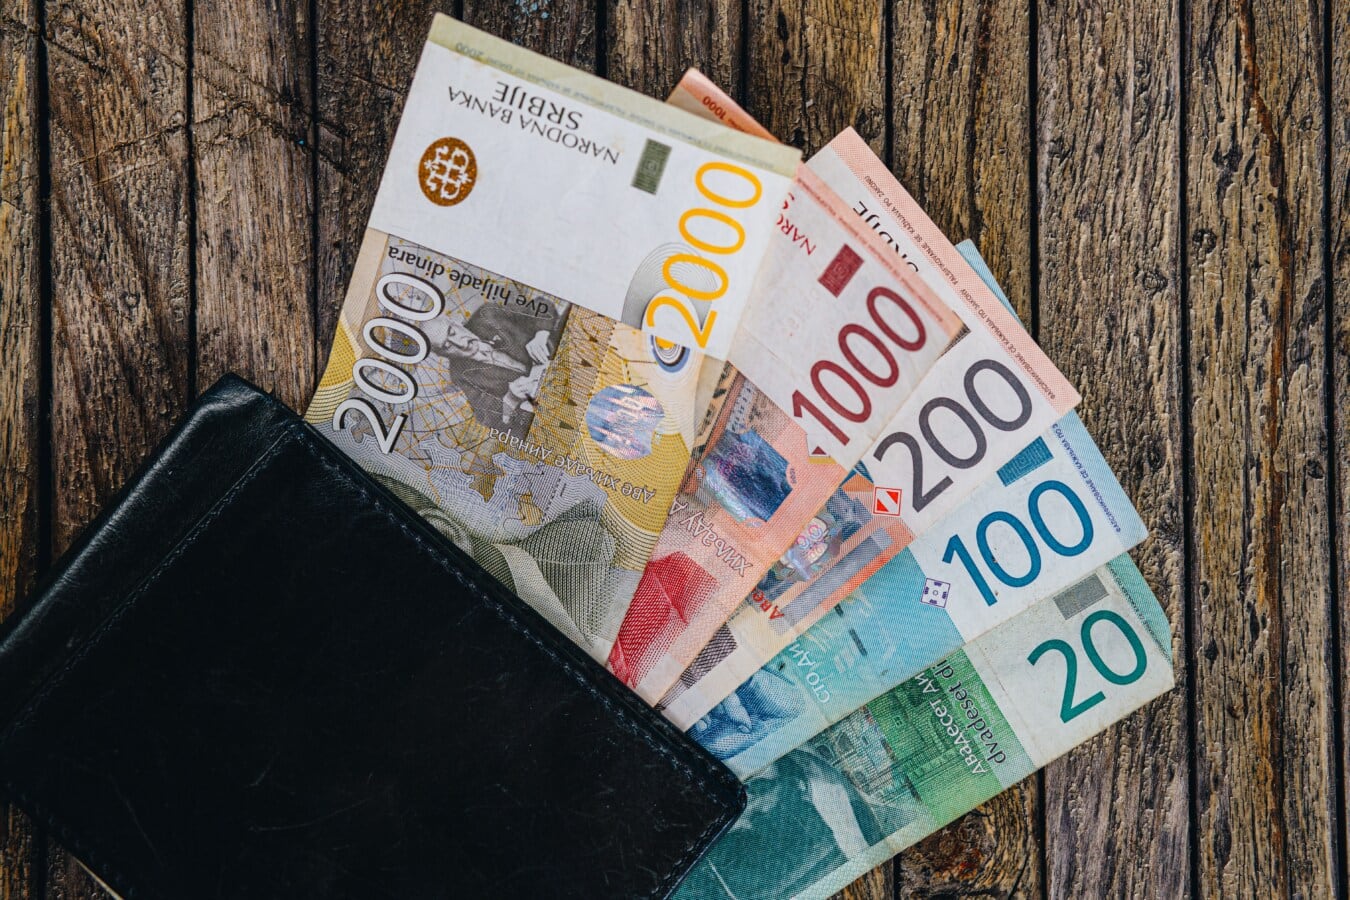 Srbsko, papírové peníze, peníze, srbský dinár, hotovost, nakupování, peněženka, financování, měna, papír